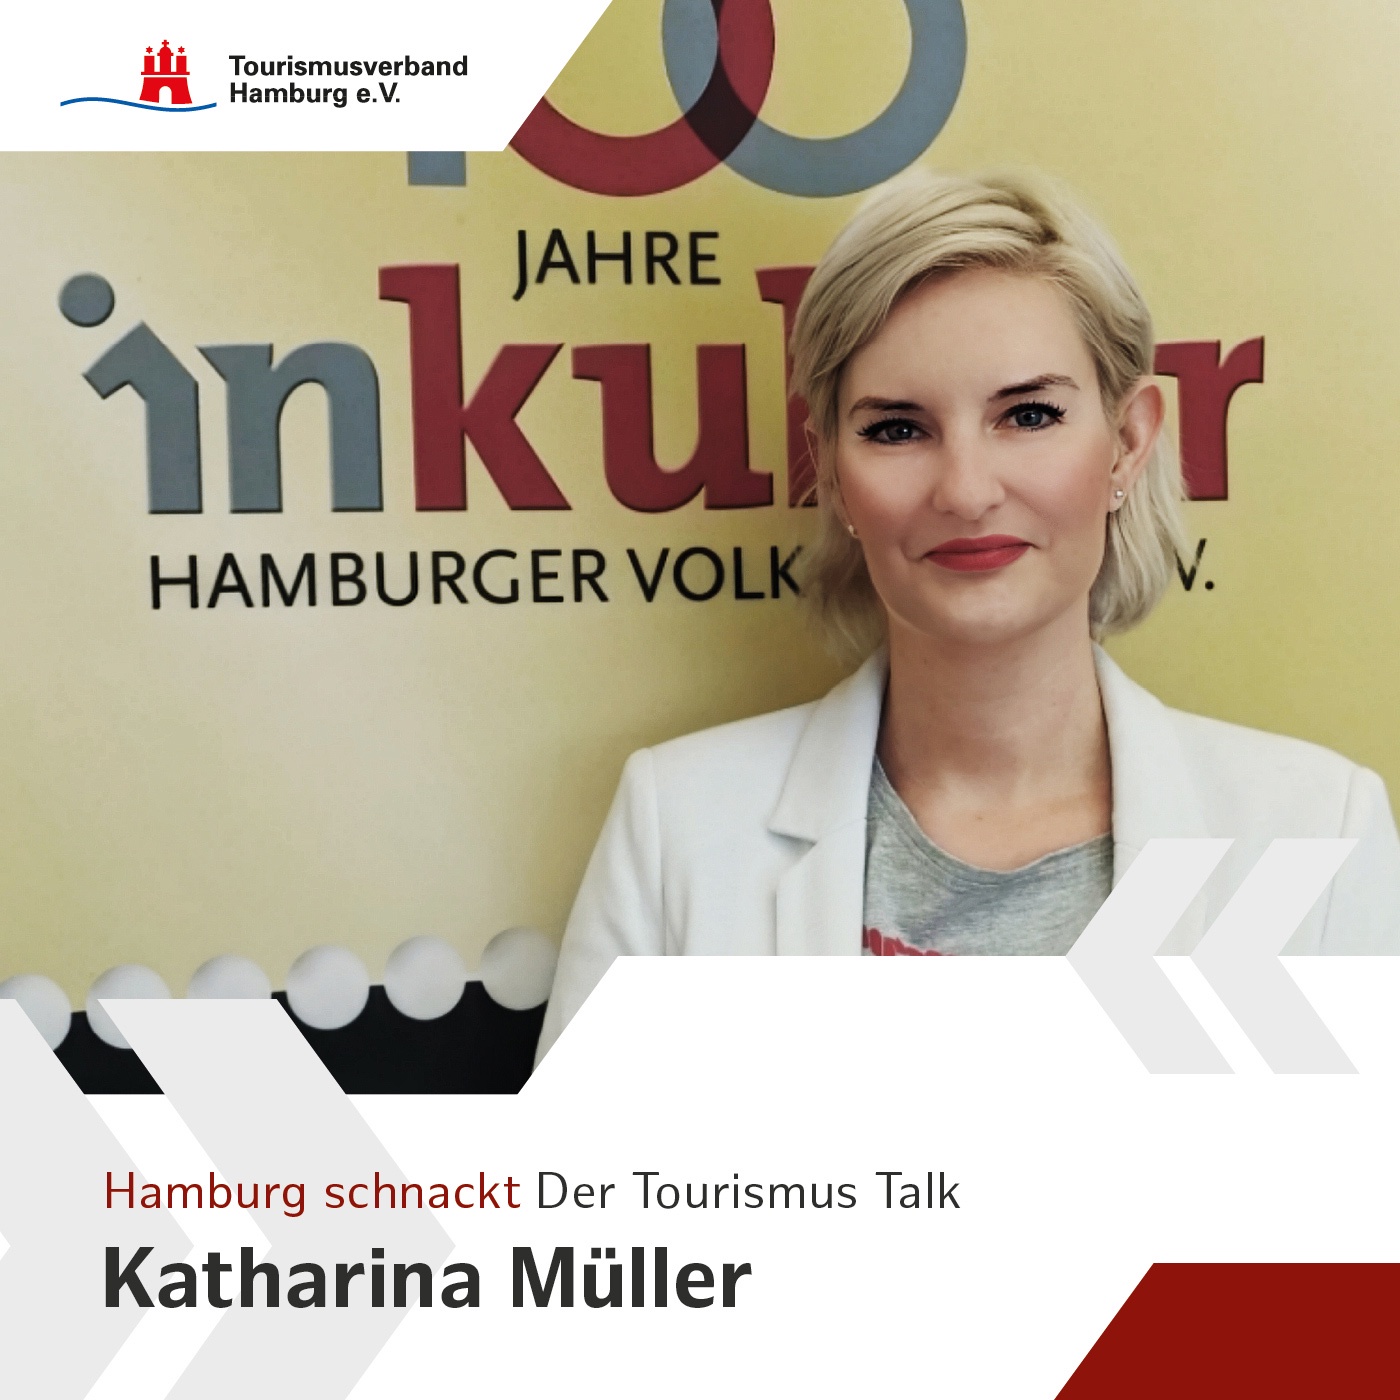 Hamburg schnackt - mit Katharina Müller, Leiterin der Öffentlichkeitsarbeit von inkultur - Haus der Hamburger Volksbühne